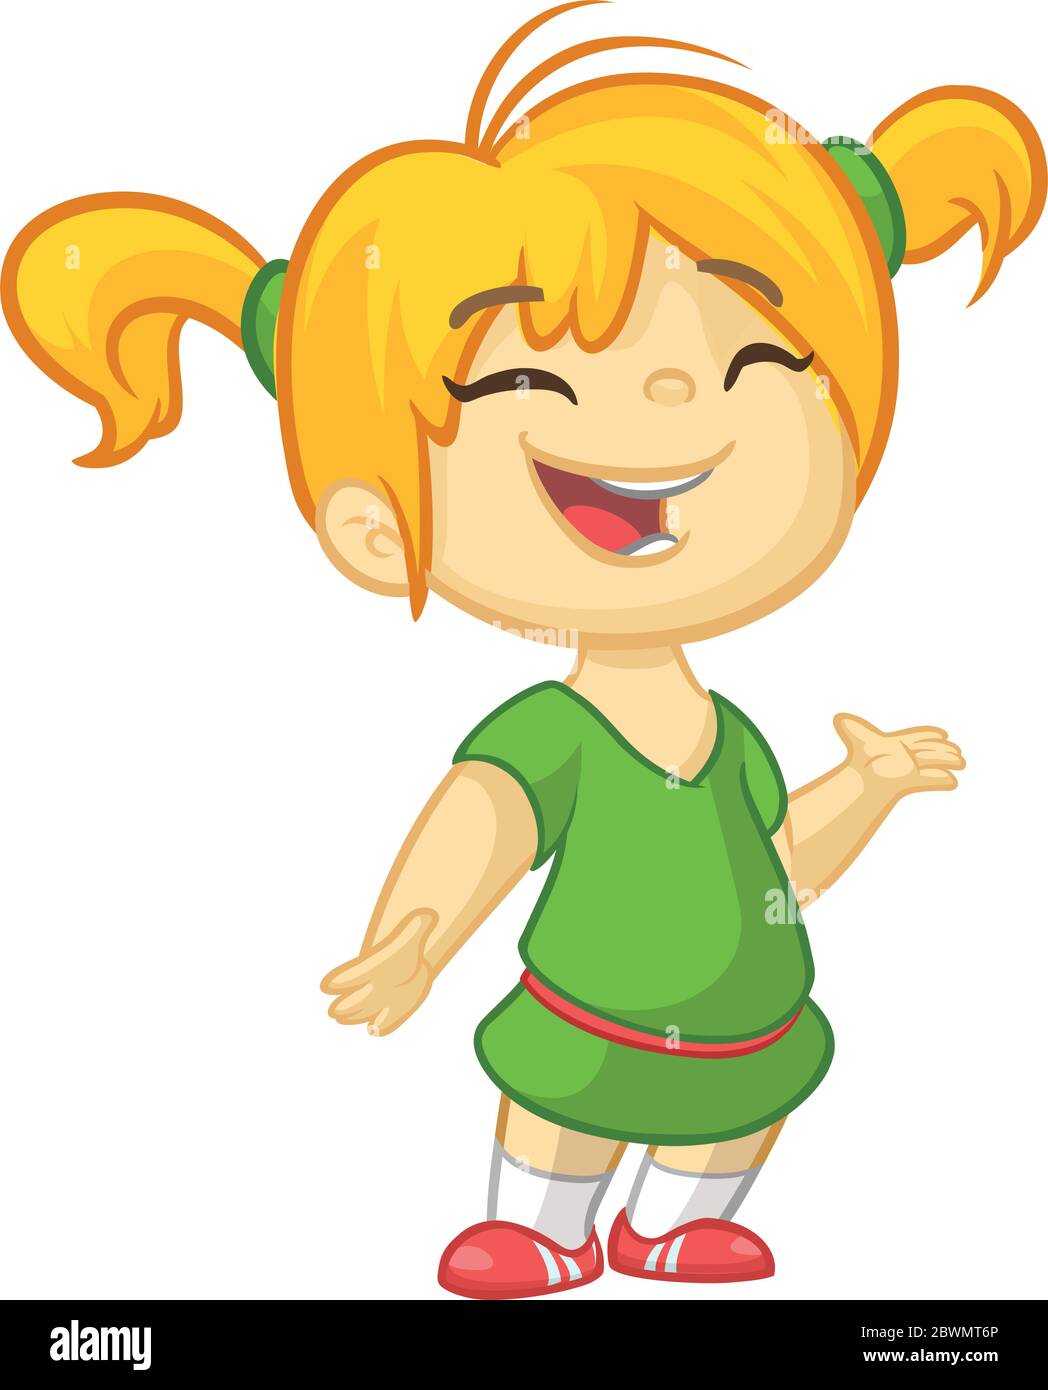 Immagine vettoriale cartoon a colori di una bambina carina. Bambina con  capelli biondi. Bambina in abito verde in piedi e sorridente su uno sfondo  bianco Immagine e Vettoriale - Alamy